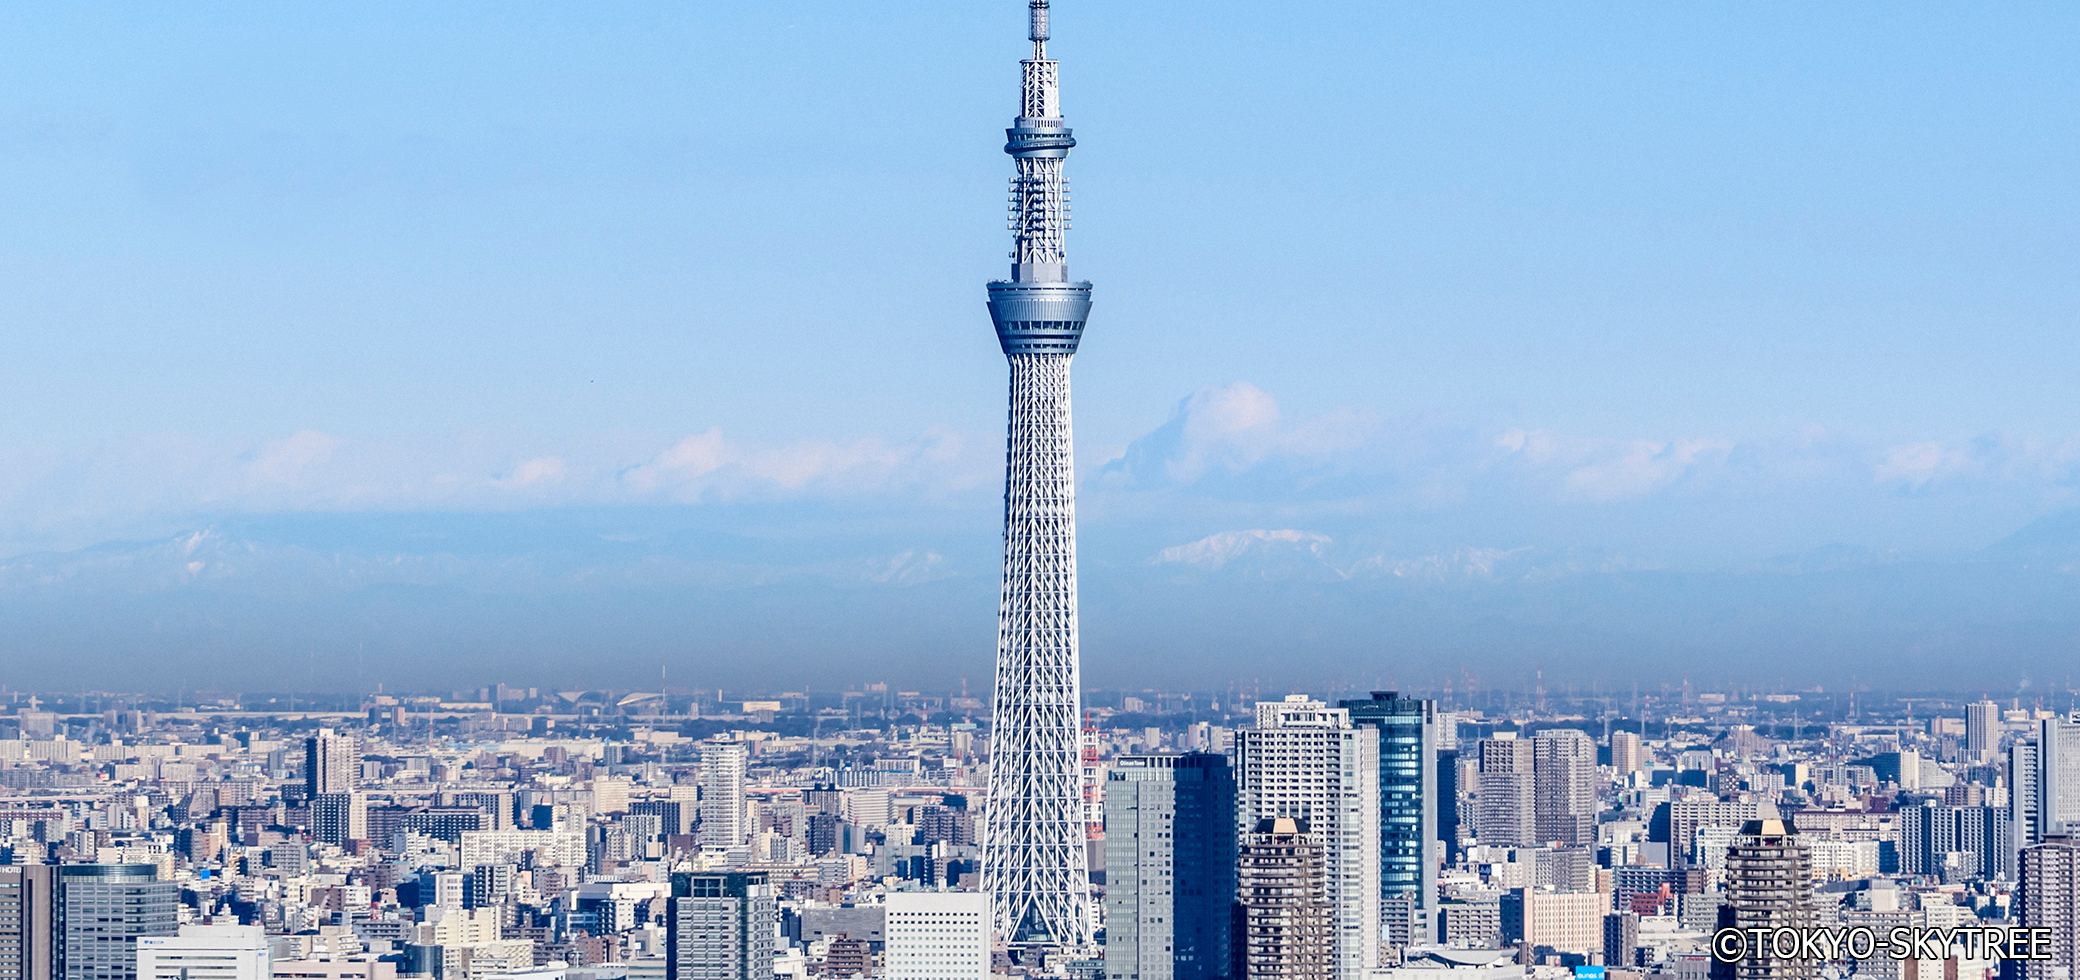 Oshiage / Mukojima / Tokyo Skytree